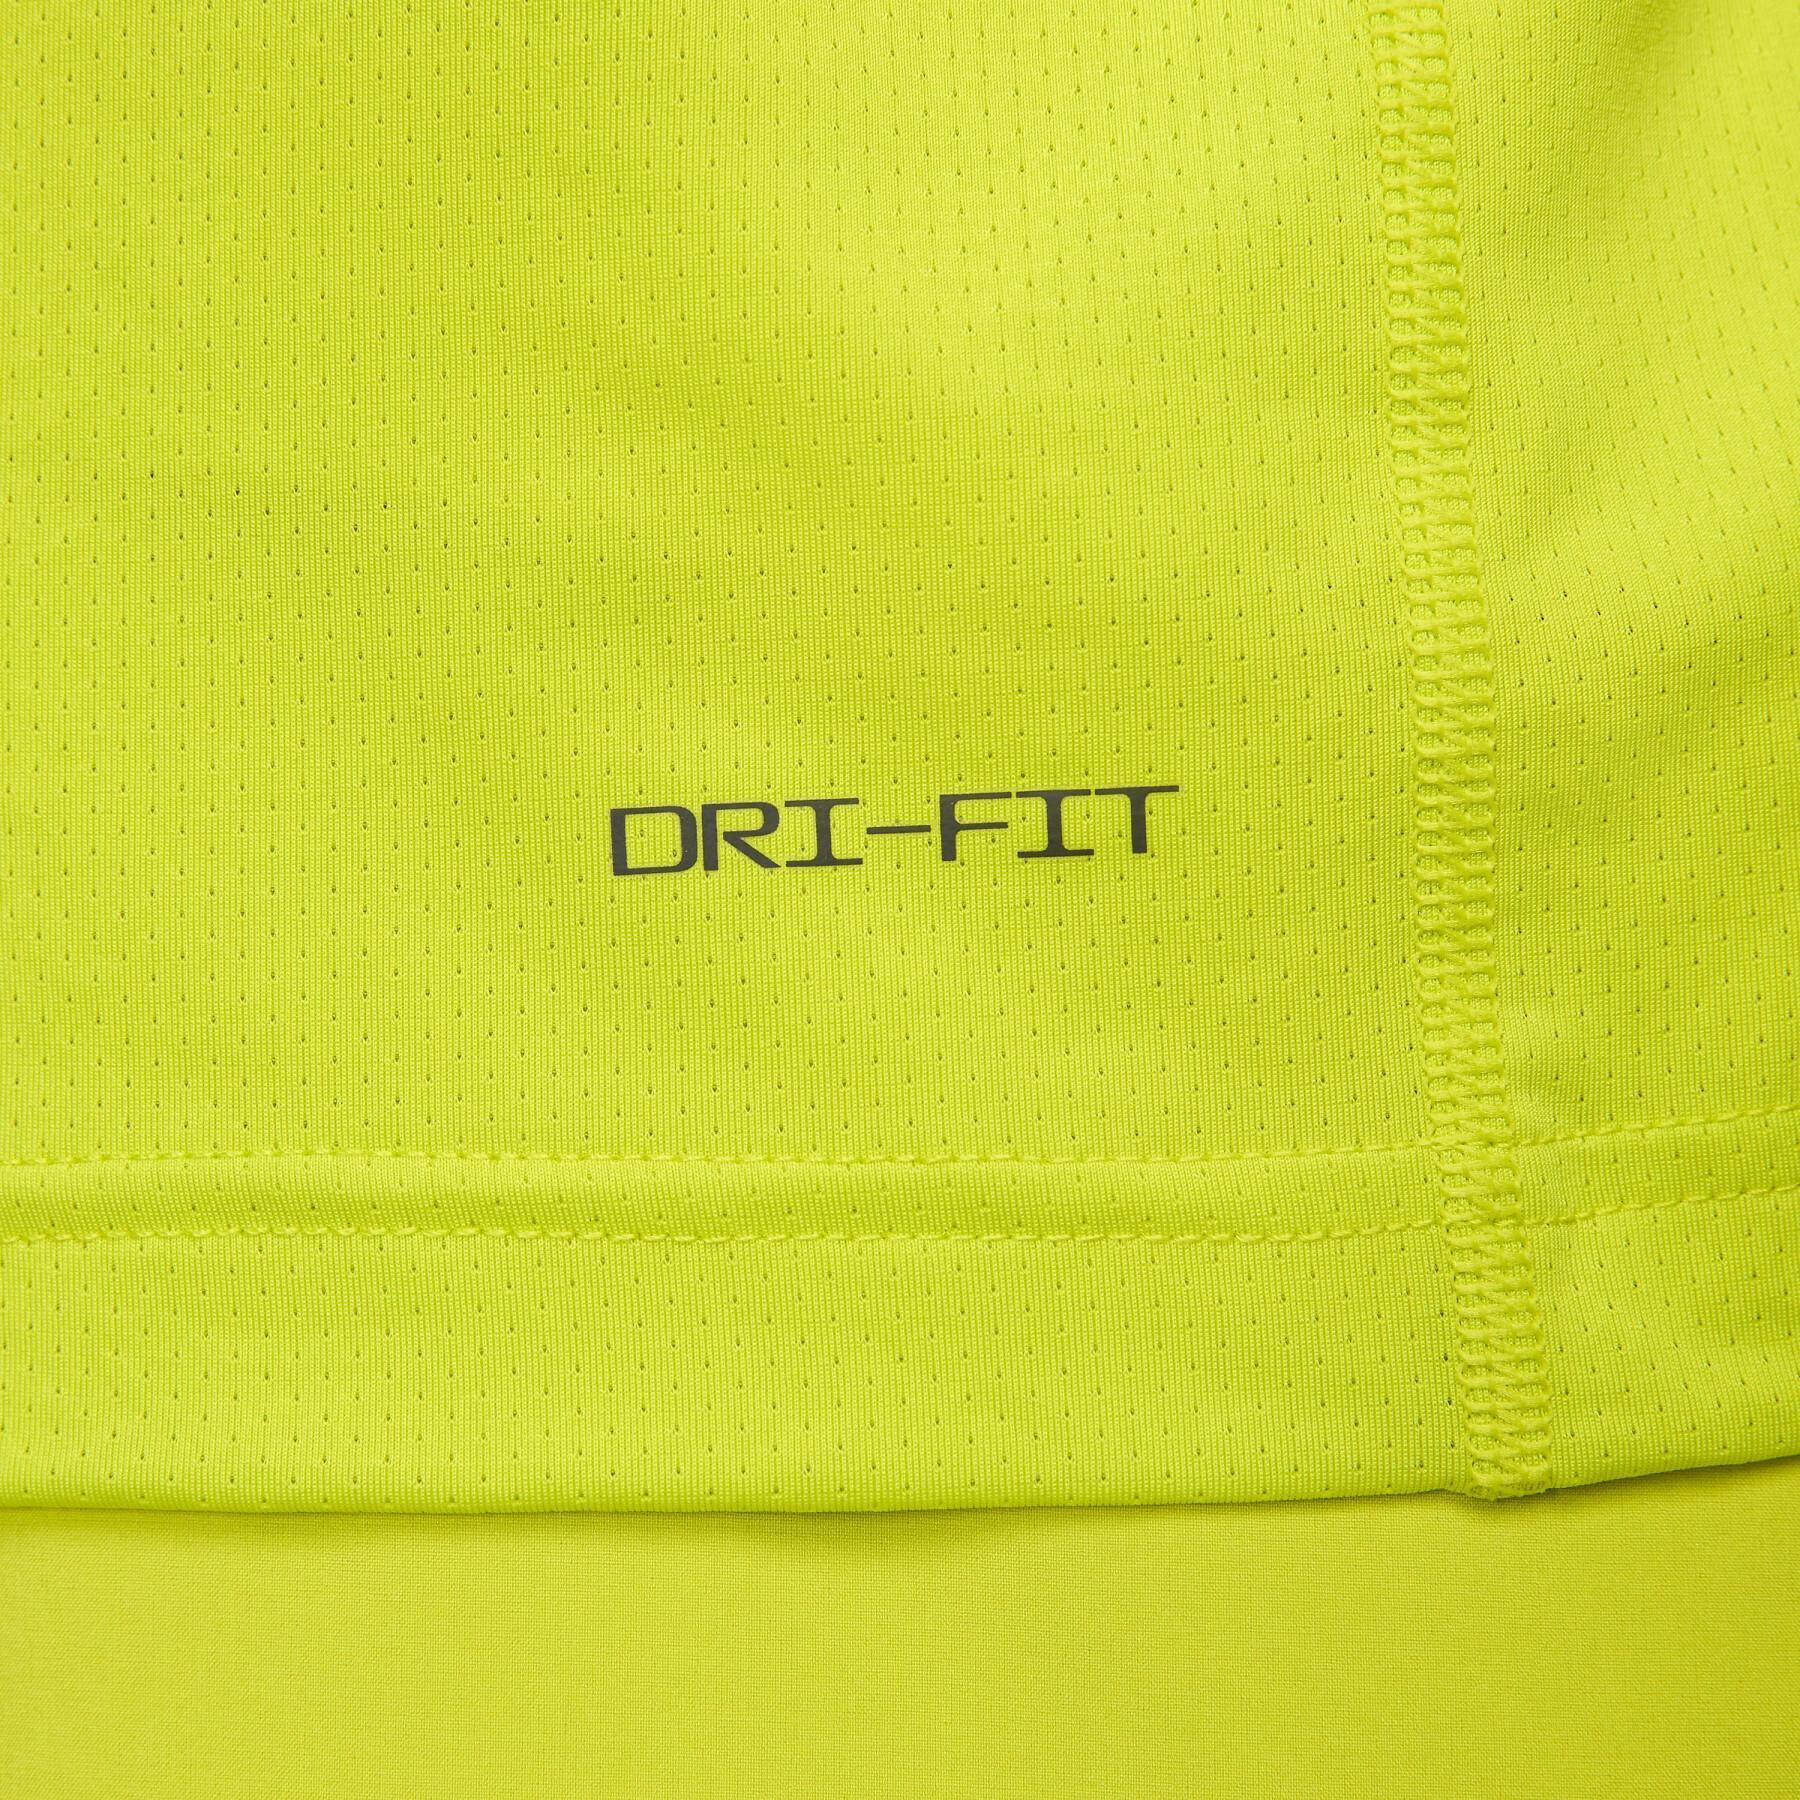 Débardeur Nike Dri-FIT Ready